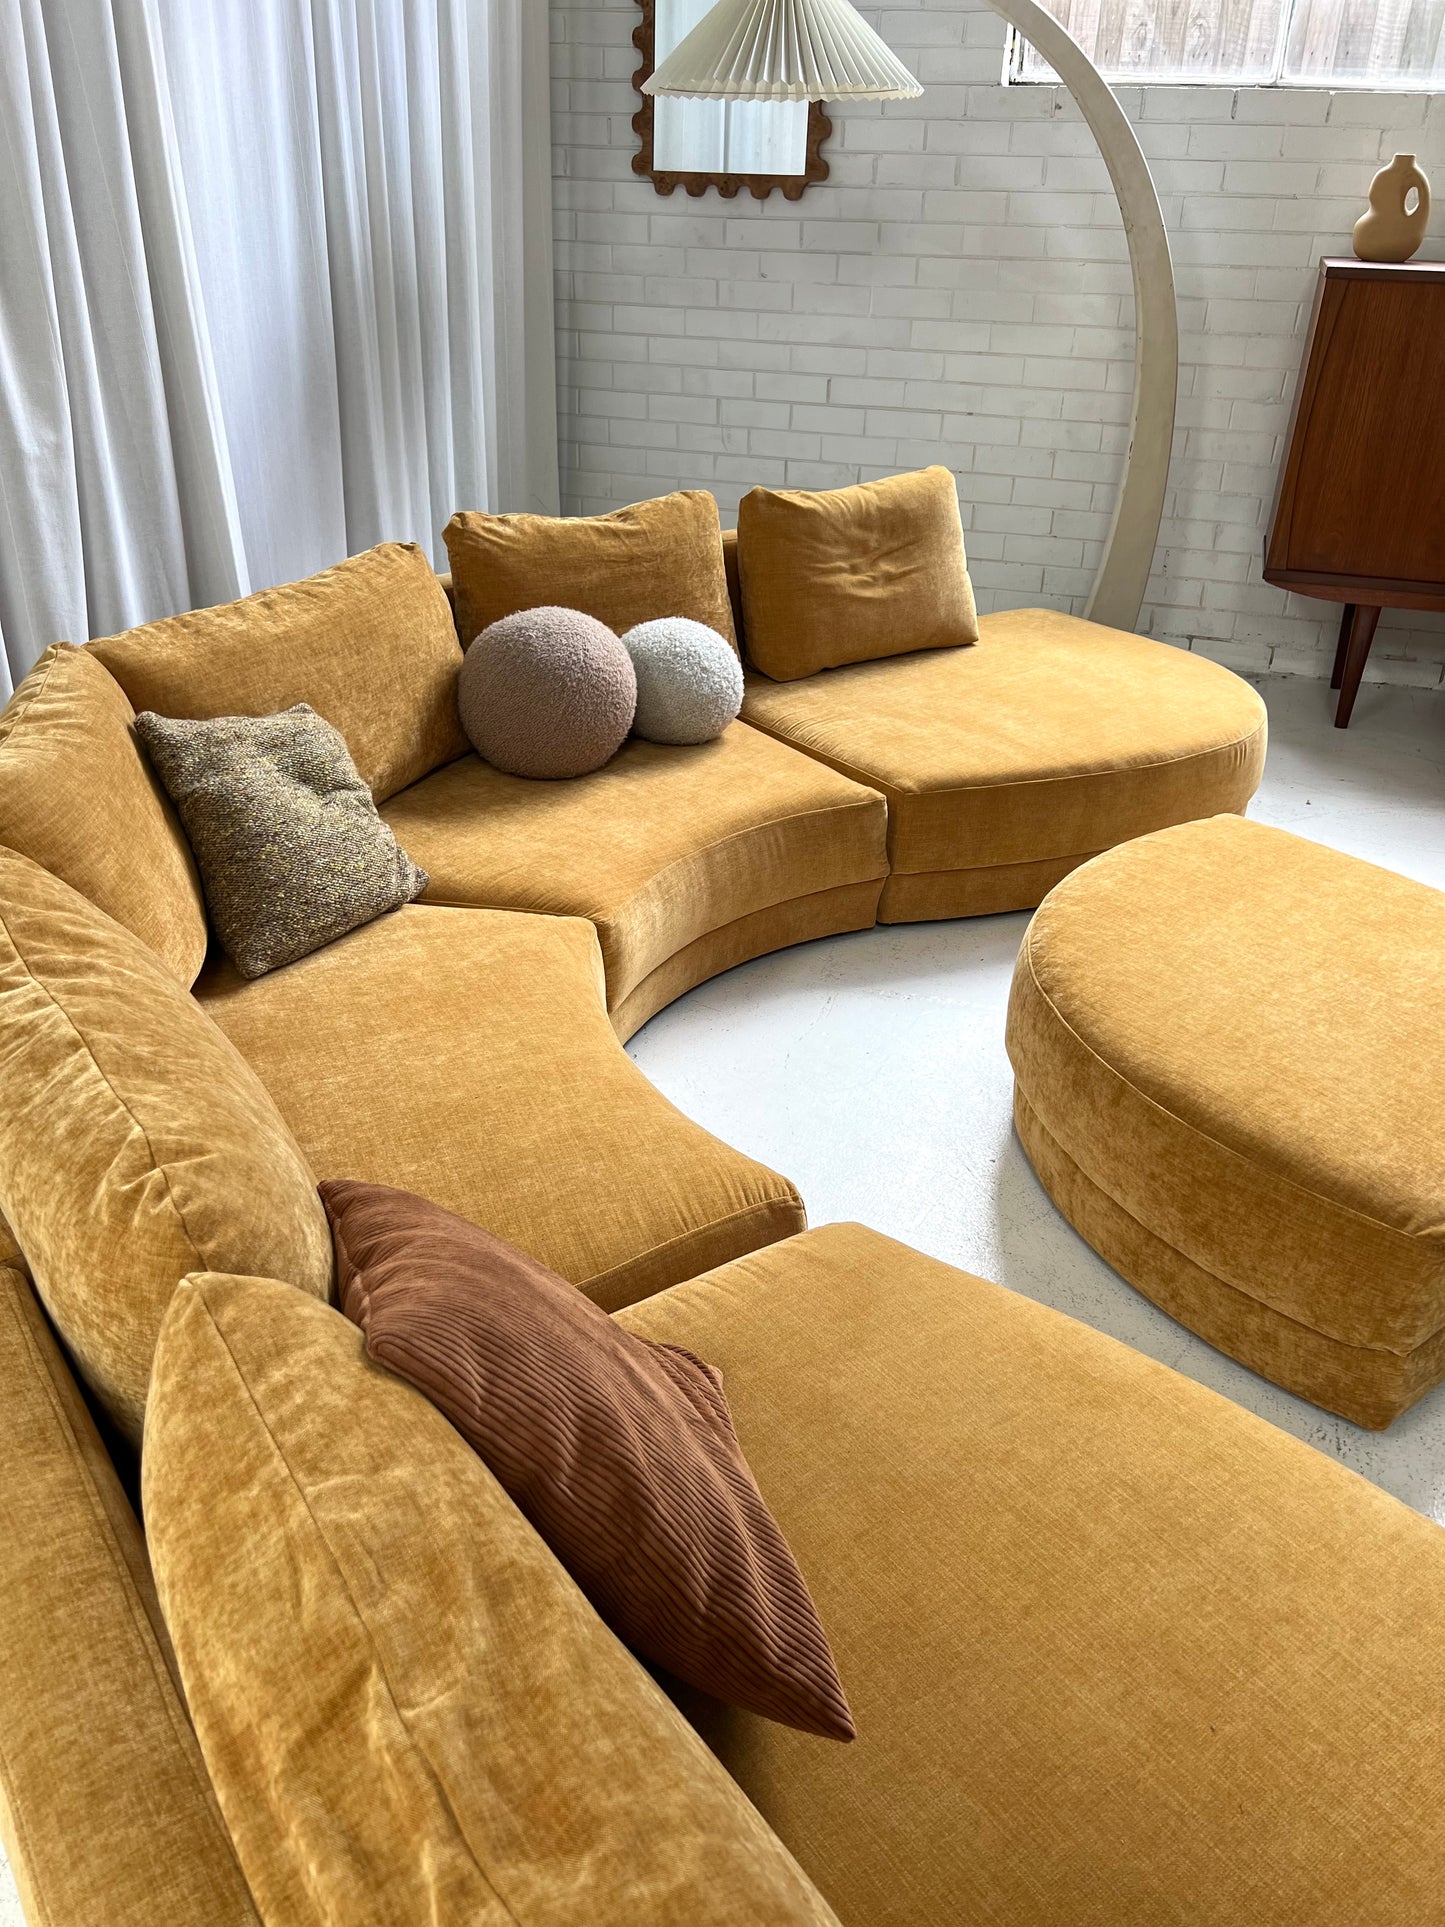 Bespoke Mustard Curved Modular Sofa